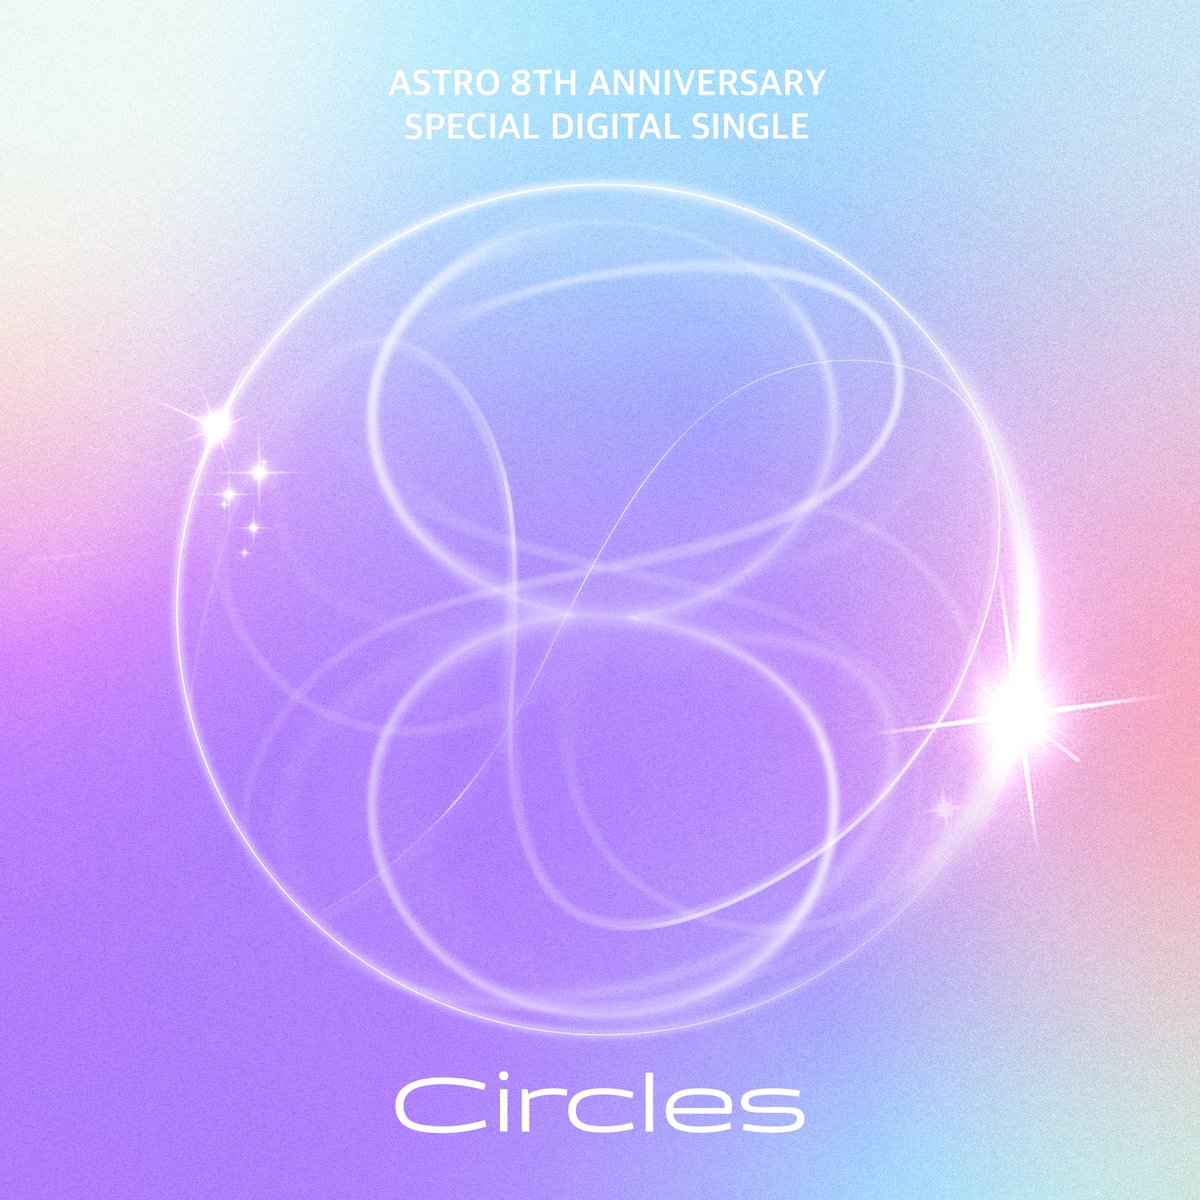 [#아스트로] 8TH ANNIVERSARY SPECIAL DIGITAL SINGLE <Circles> OUT NOW💜 ▶ 멜론 - han.gl/L81N4 ▶ 지니 - han.gl/f83mP ▶ FLO - han.gl/sJ8U9 #Circles #ASTRO